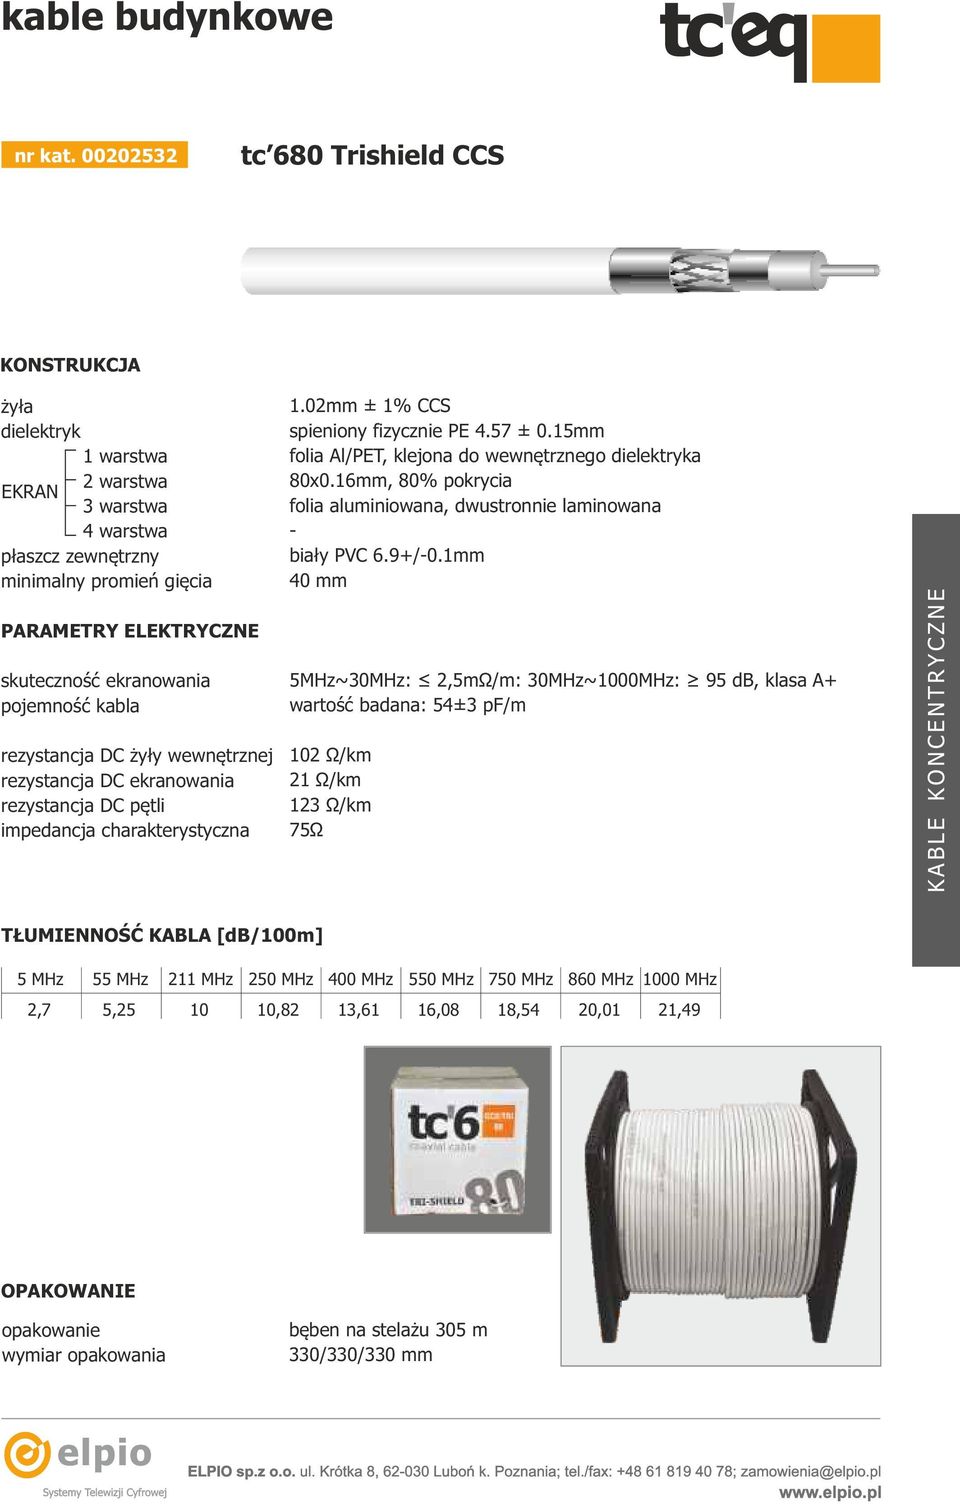 kabla rezystancja DC żyły wewnętrznej rezystancja DC ekranowania rezystancja DC pętli impedancja charakterystyczna 1.02mm ± 1% CCS spieniony fizycznie PE 4.57 ± 0.